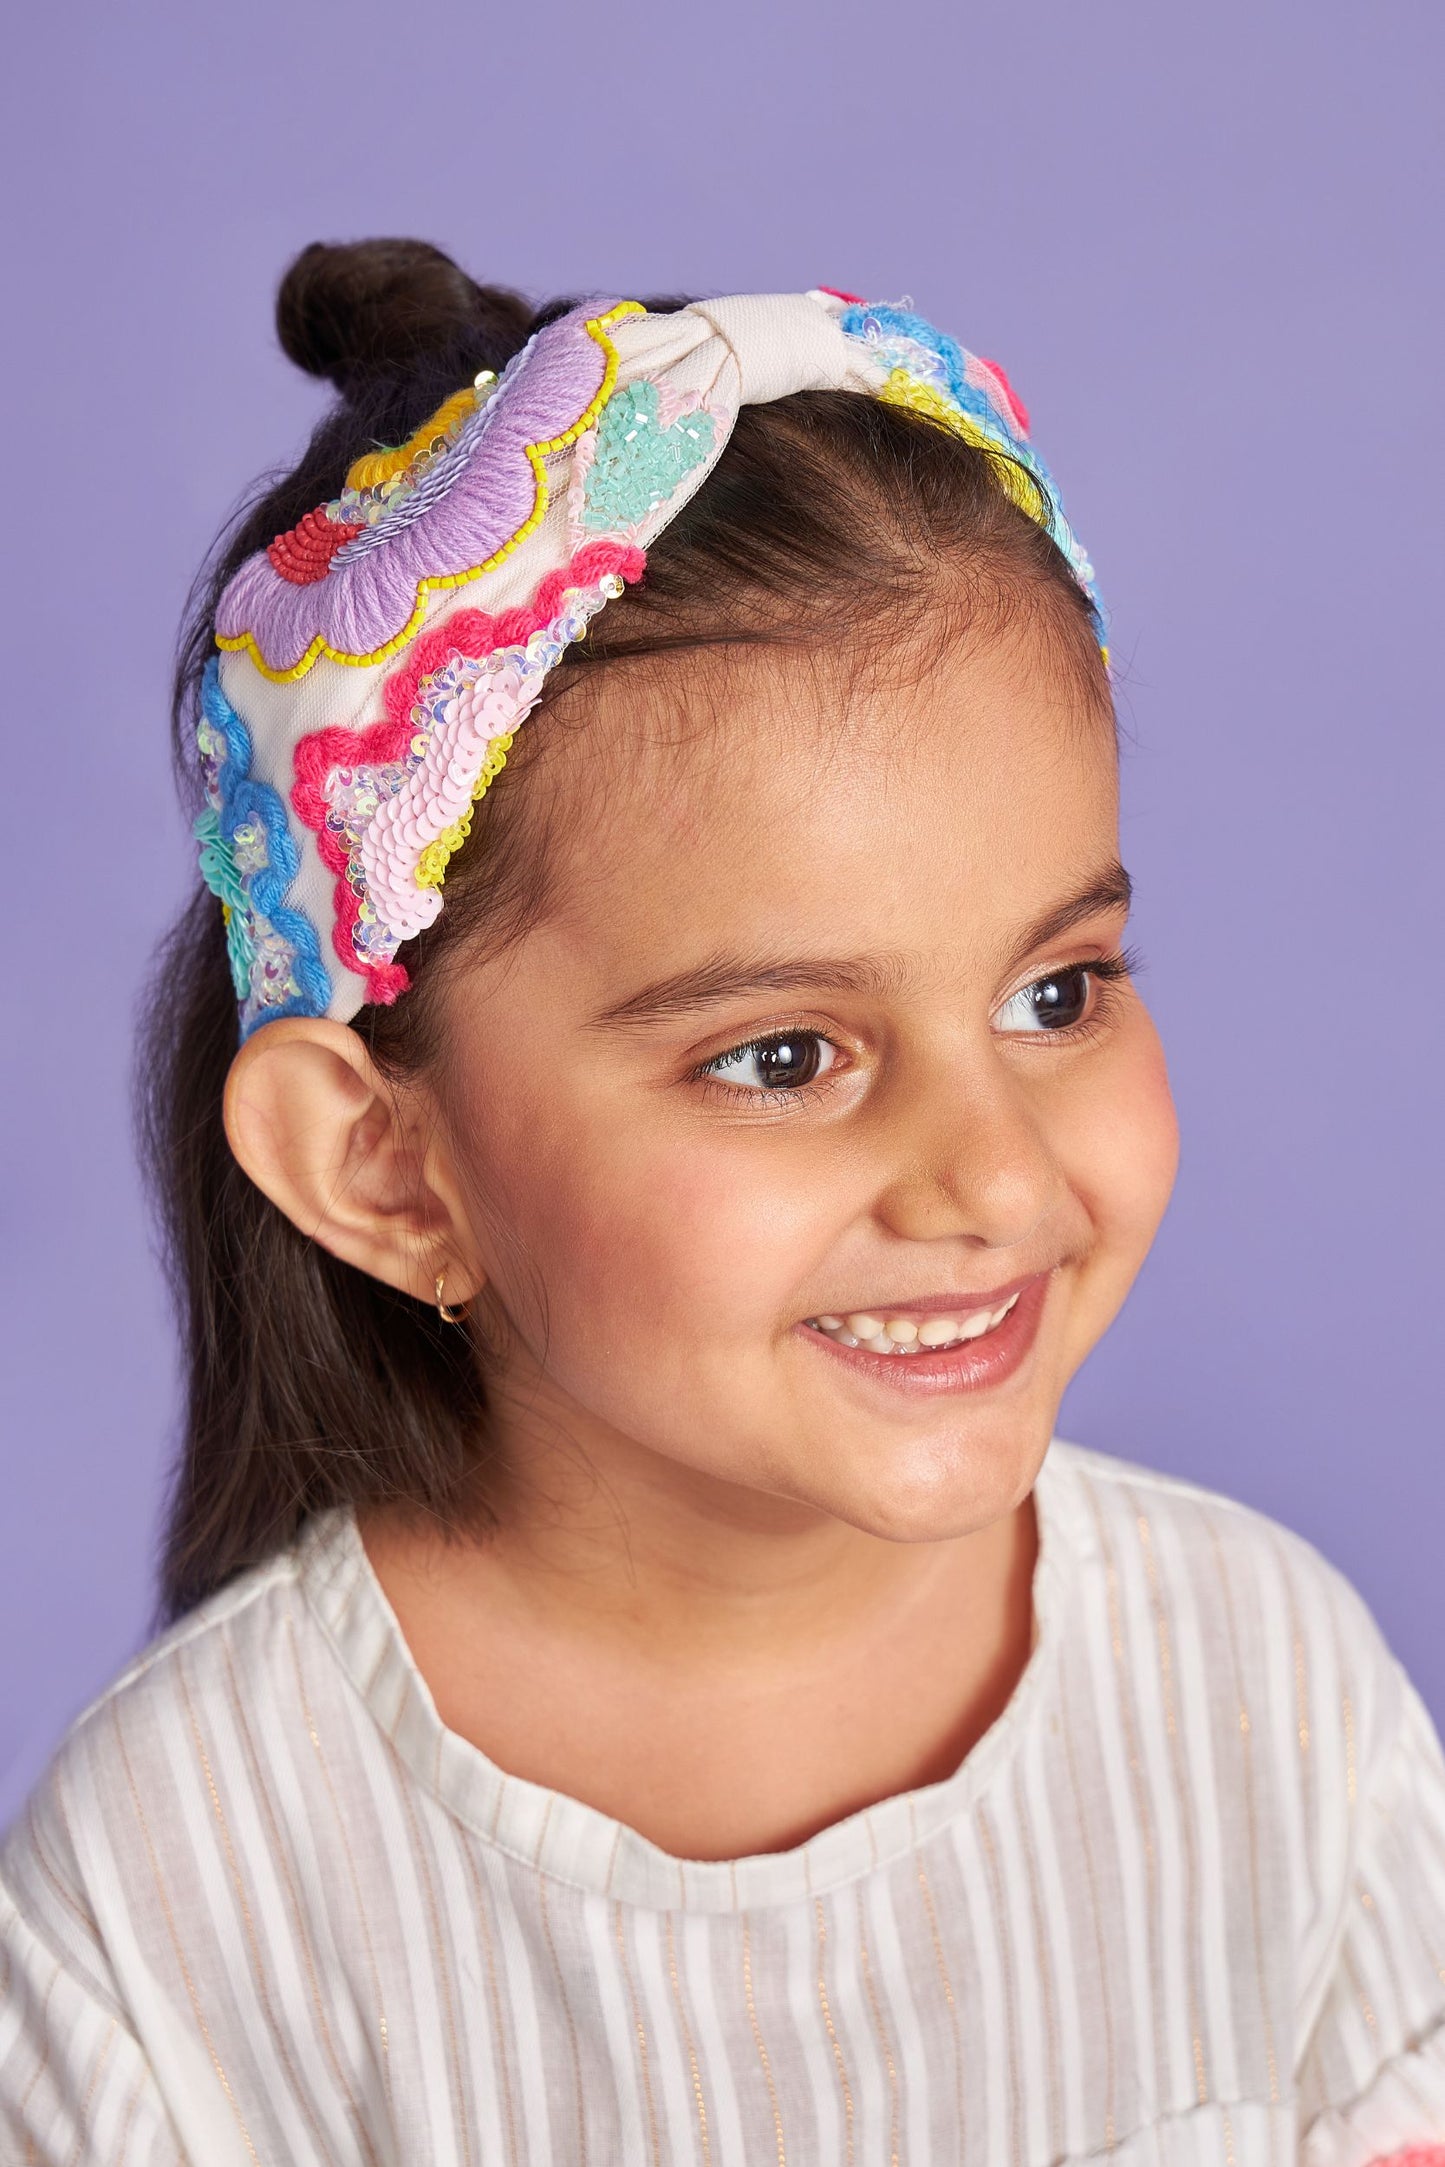 Cara embroidered headband on kids